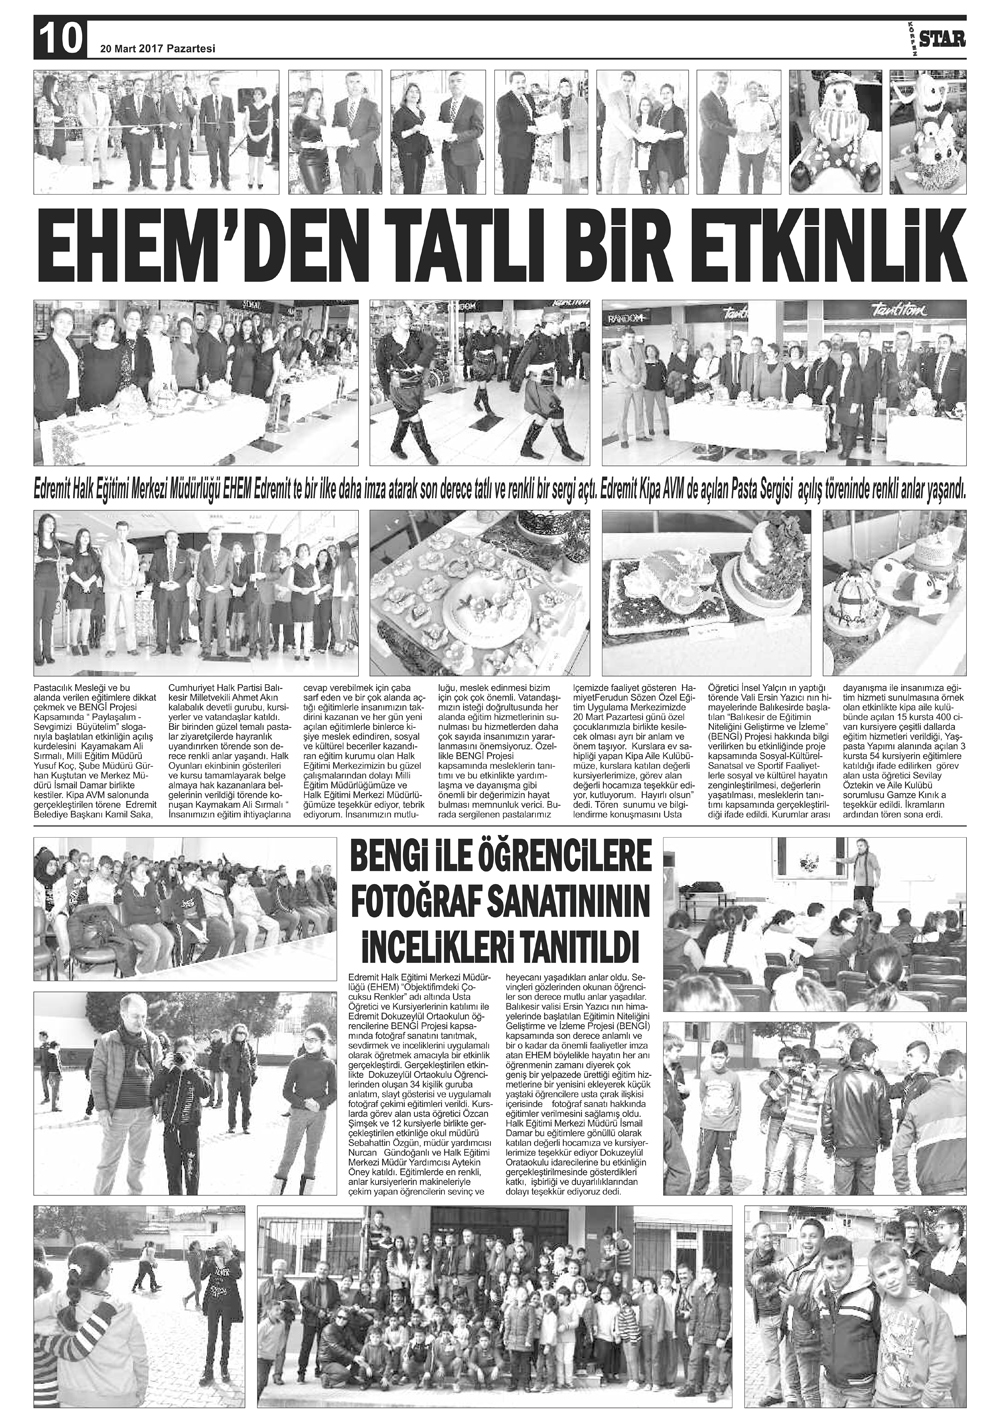 20032017-tarihli-gazetemiz-117-03-20072036.jpg